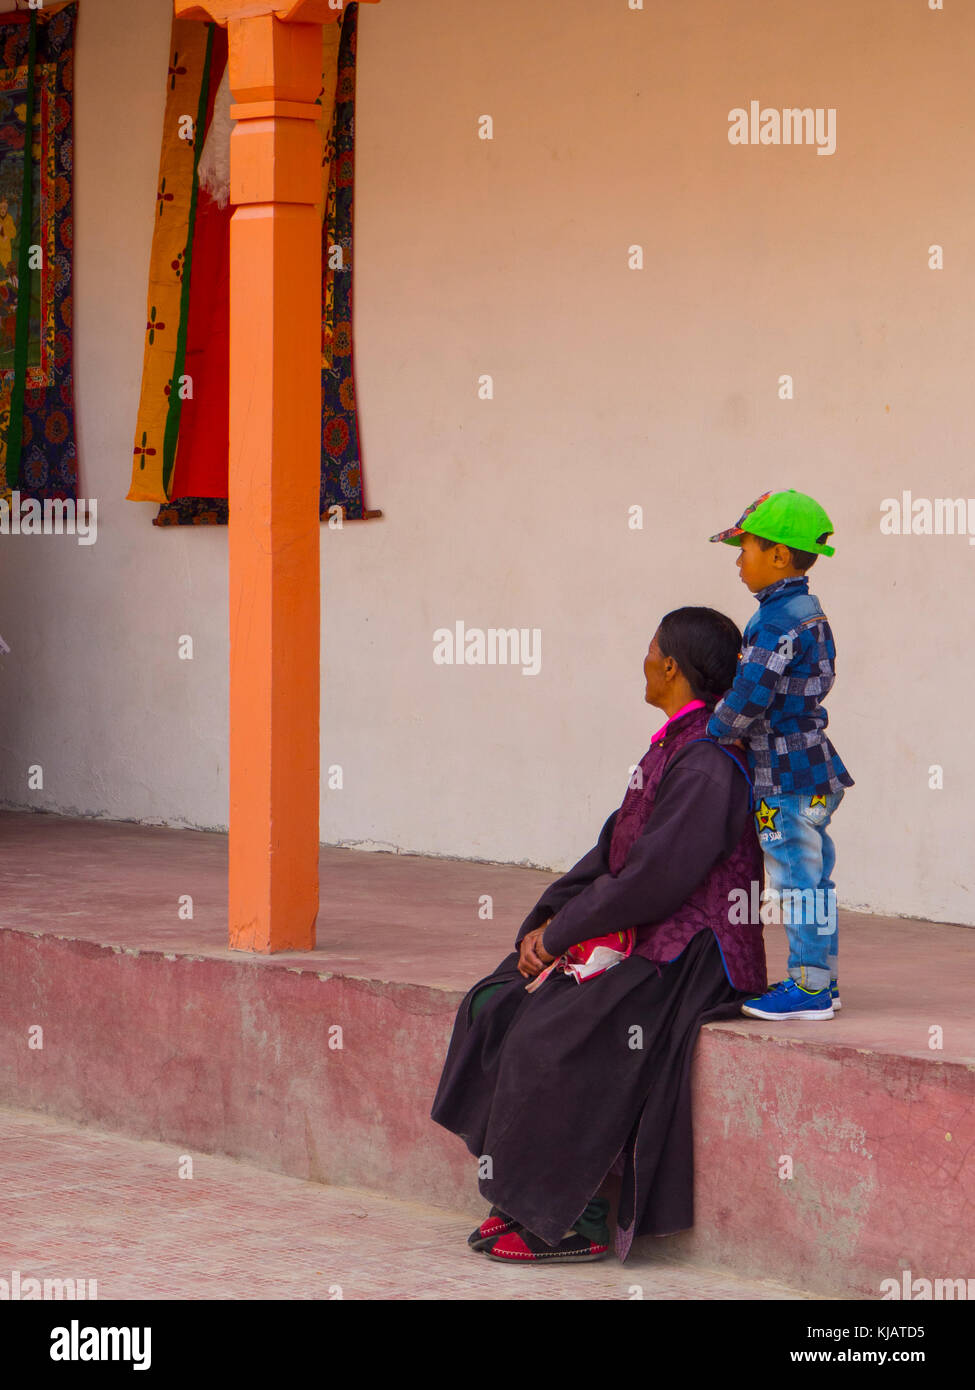 La madre e il bambino al monastero Buddista in Ladakh India Foto Stock